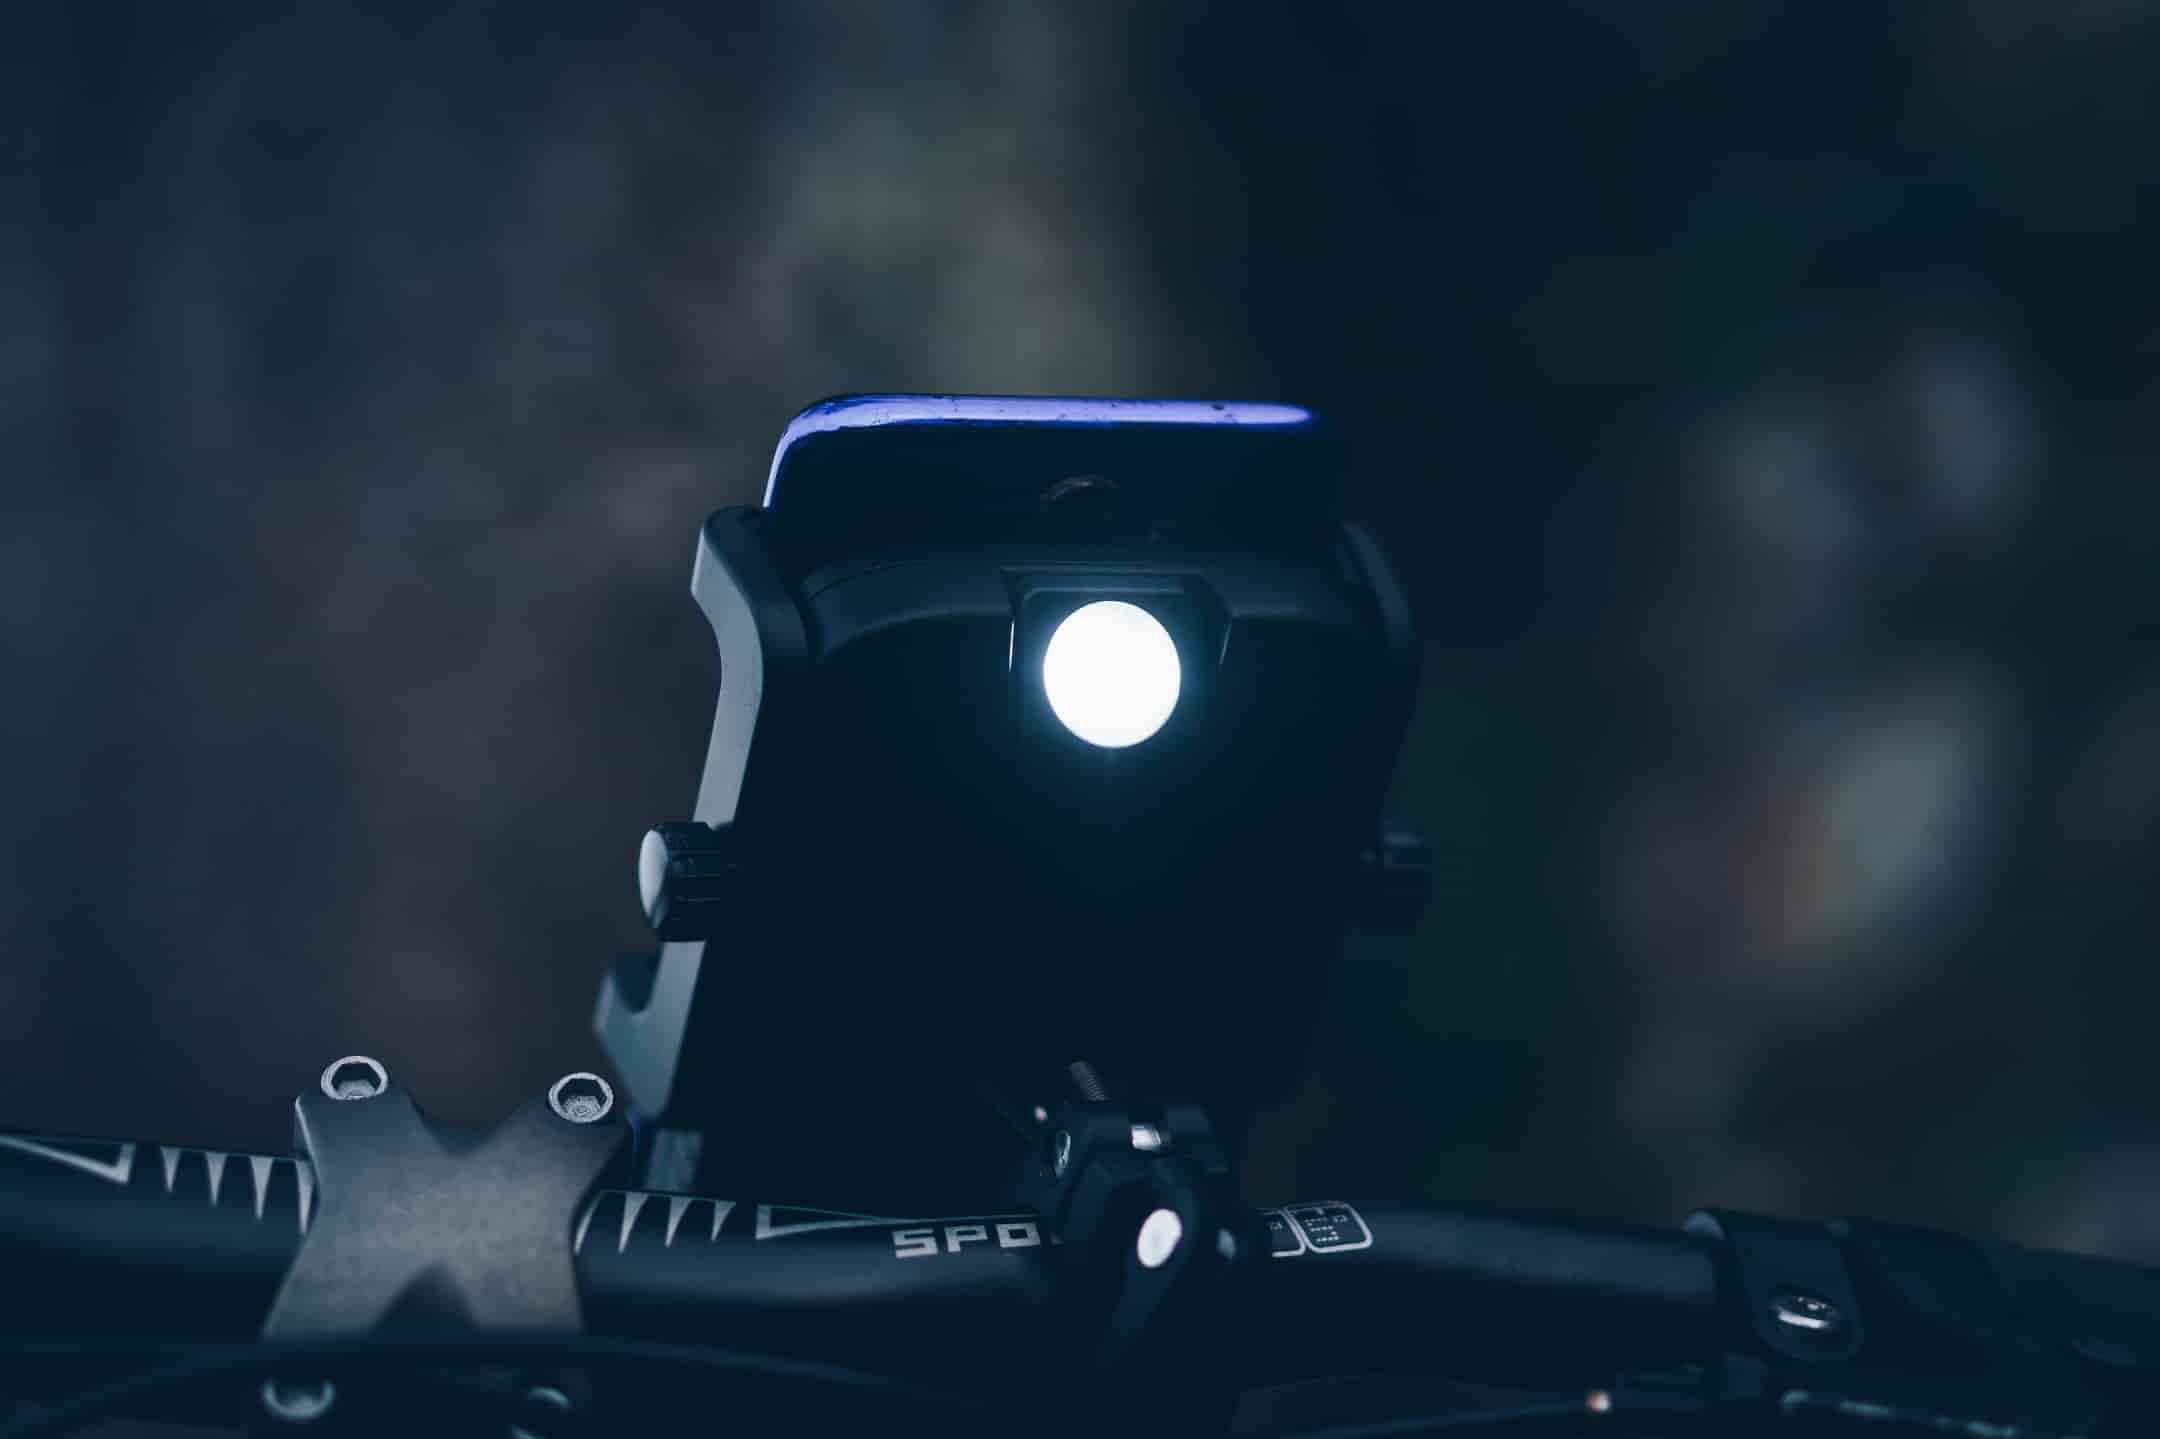 porte-téléphone cyclotron pour moto avec sa lampe allumée la nuit